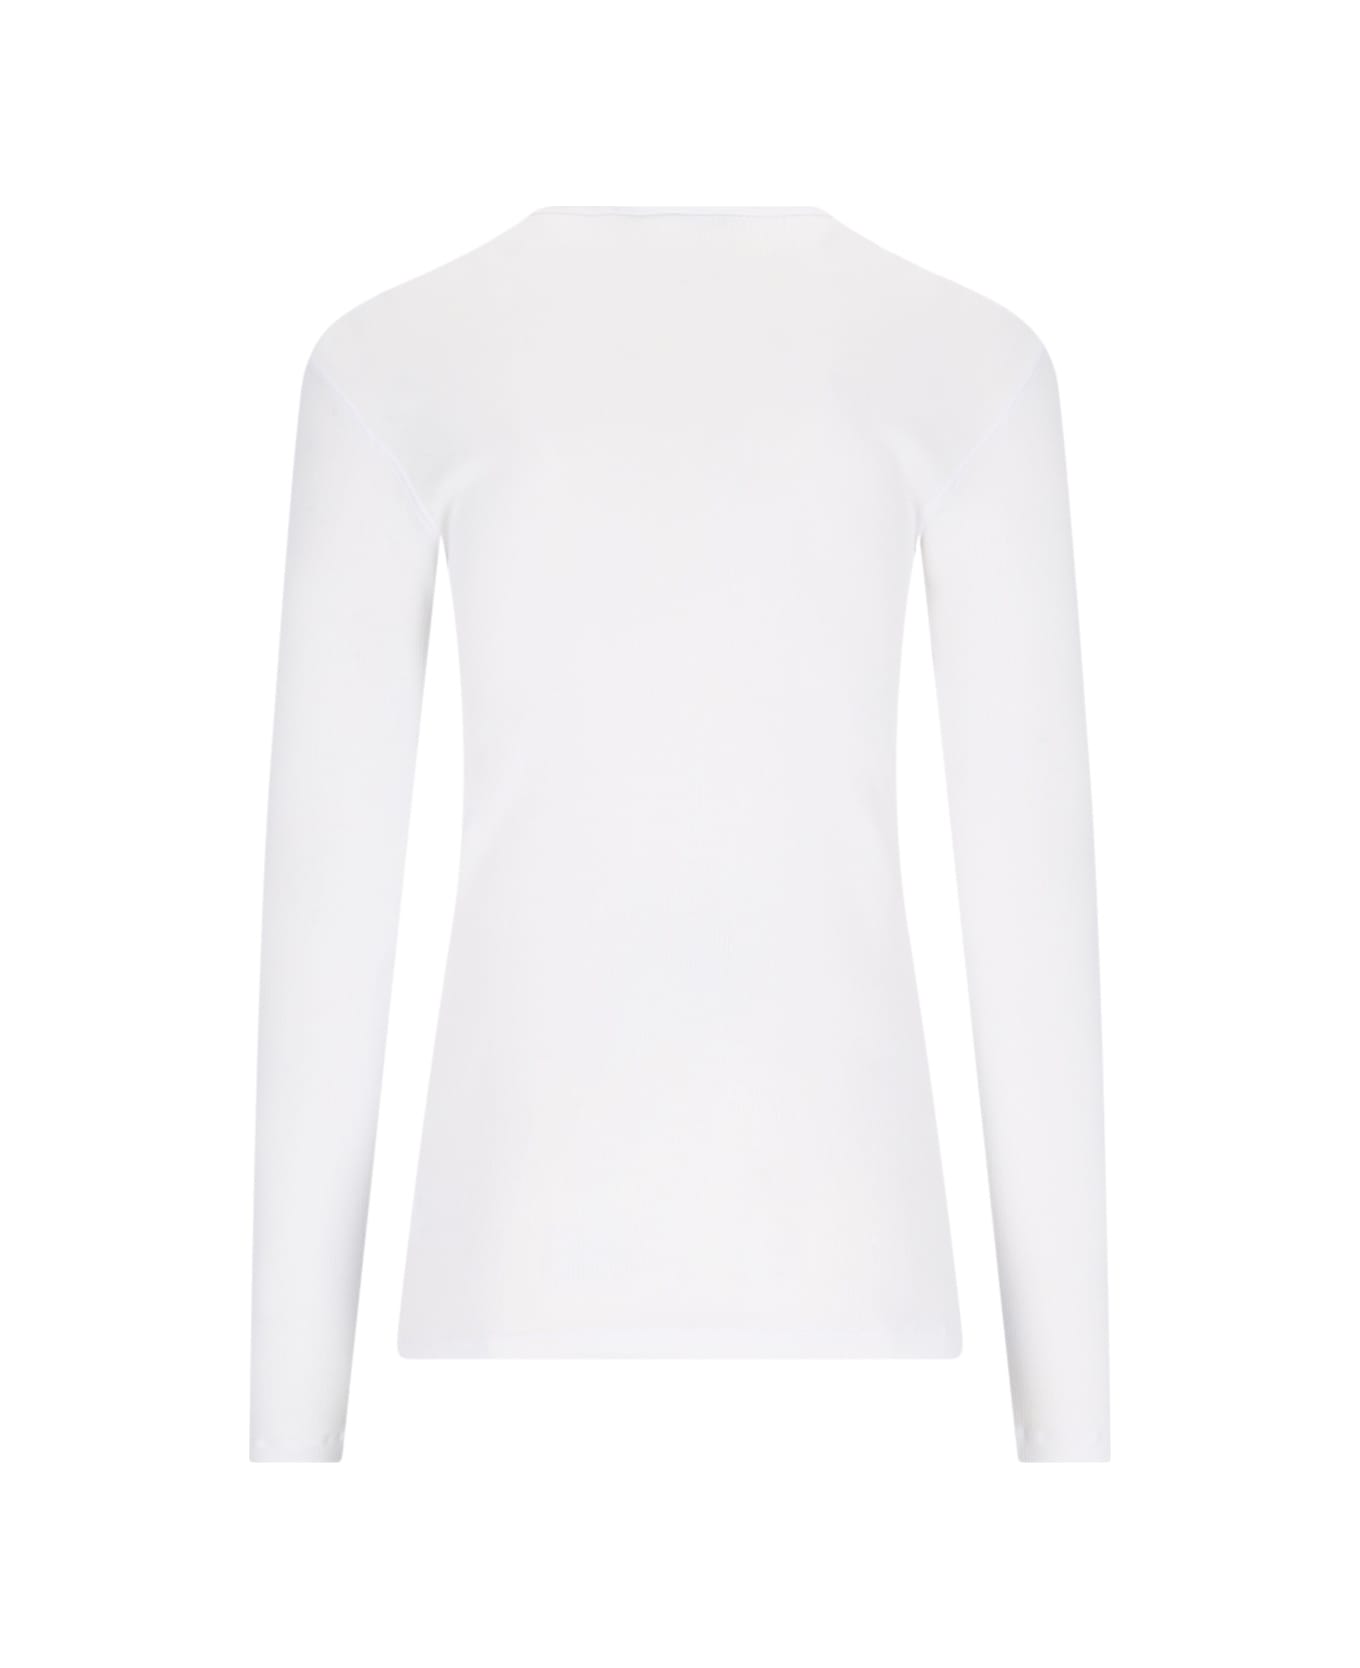 Dolce & Gabbana 'serafino' T-shirt - White シャツ